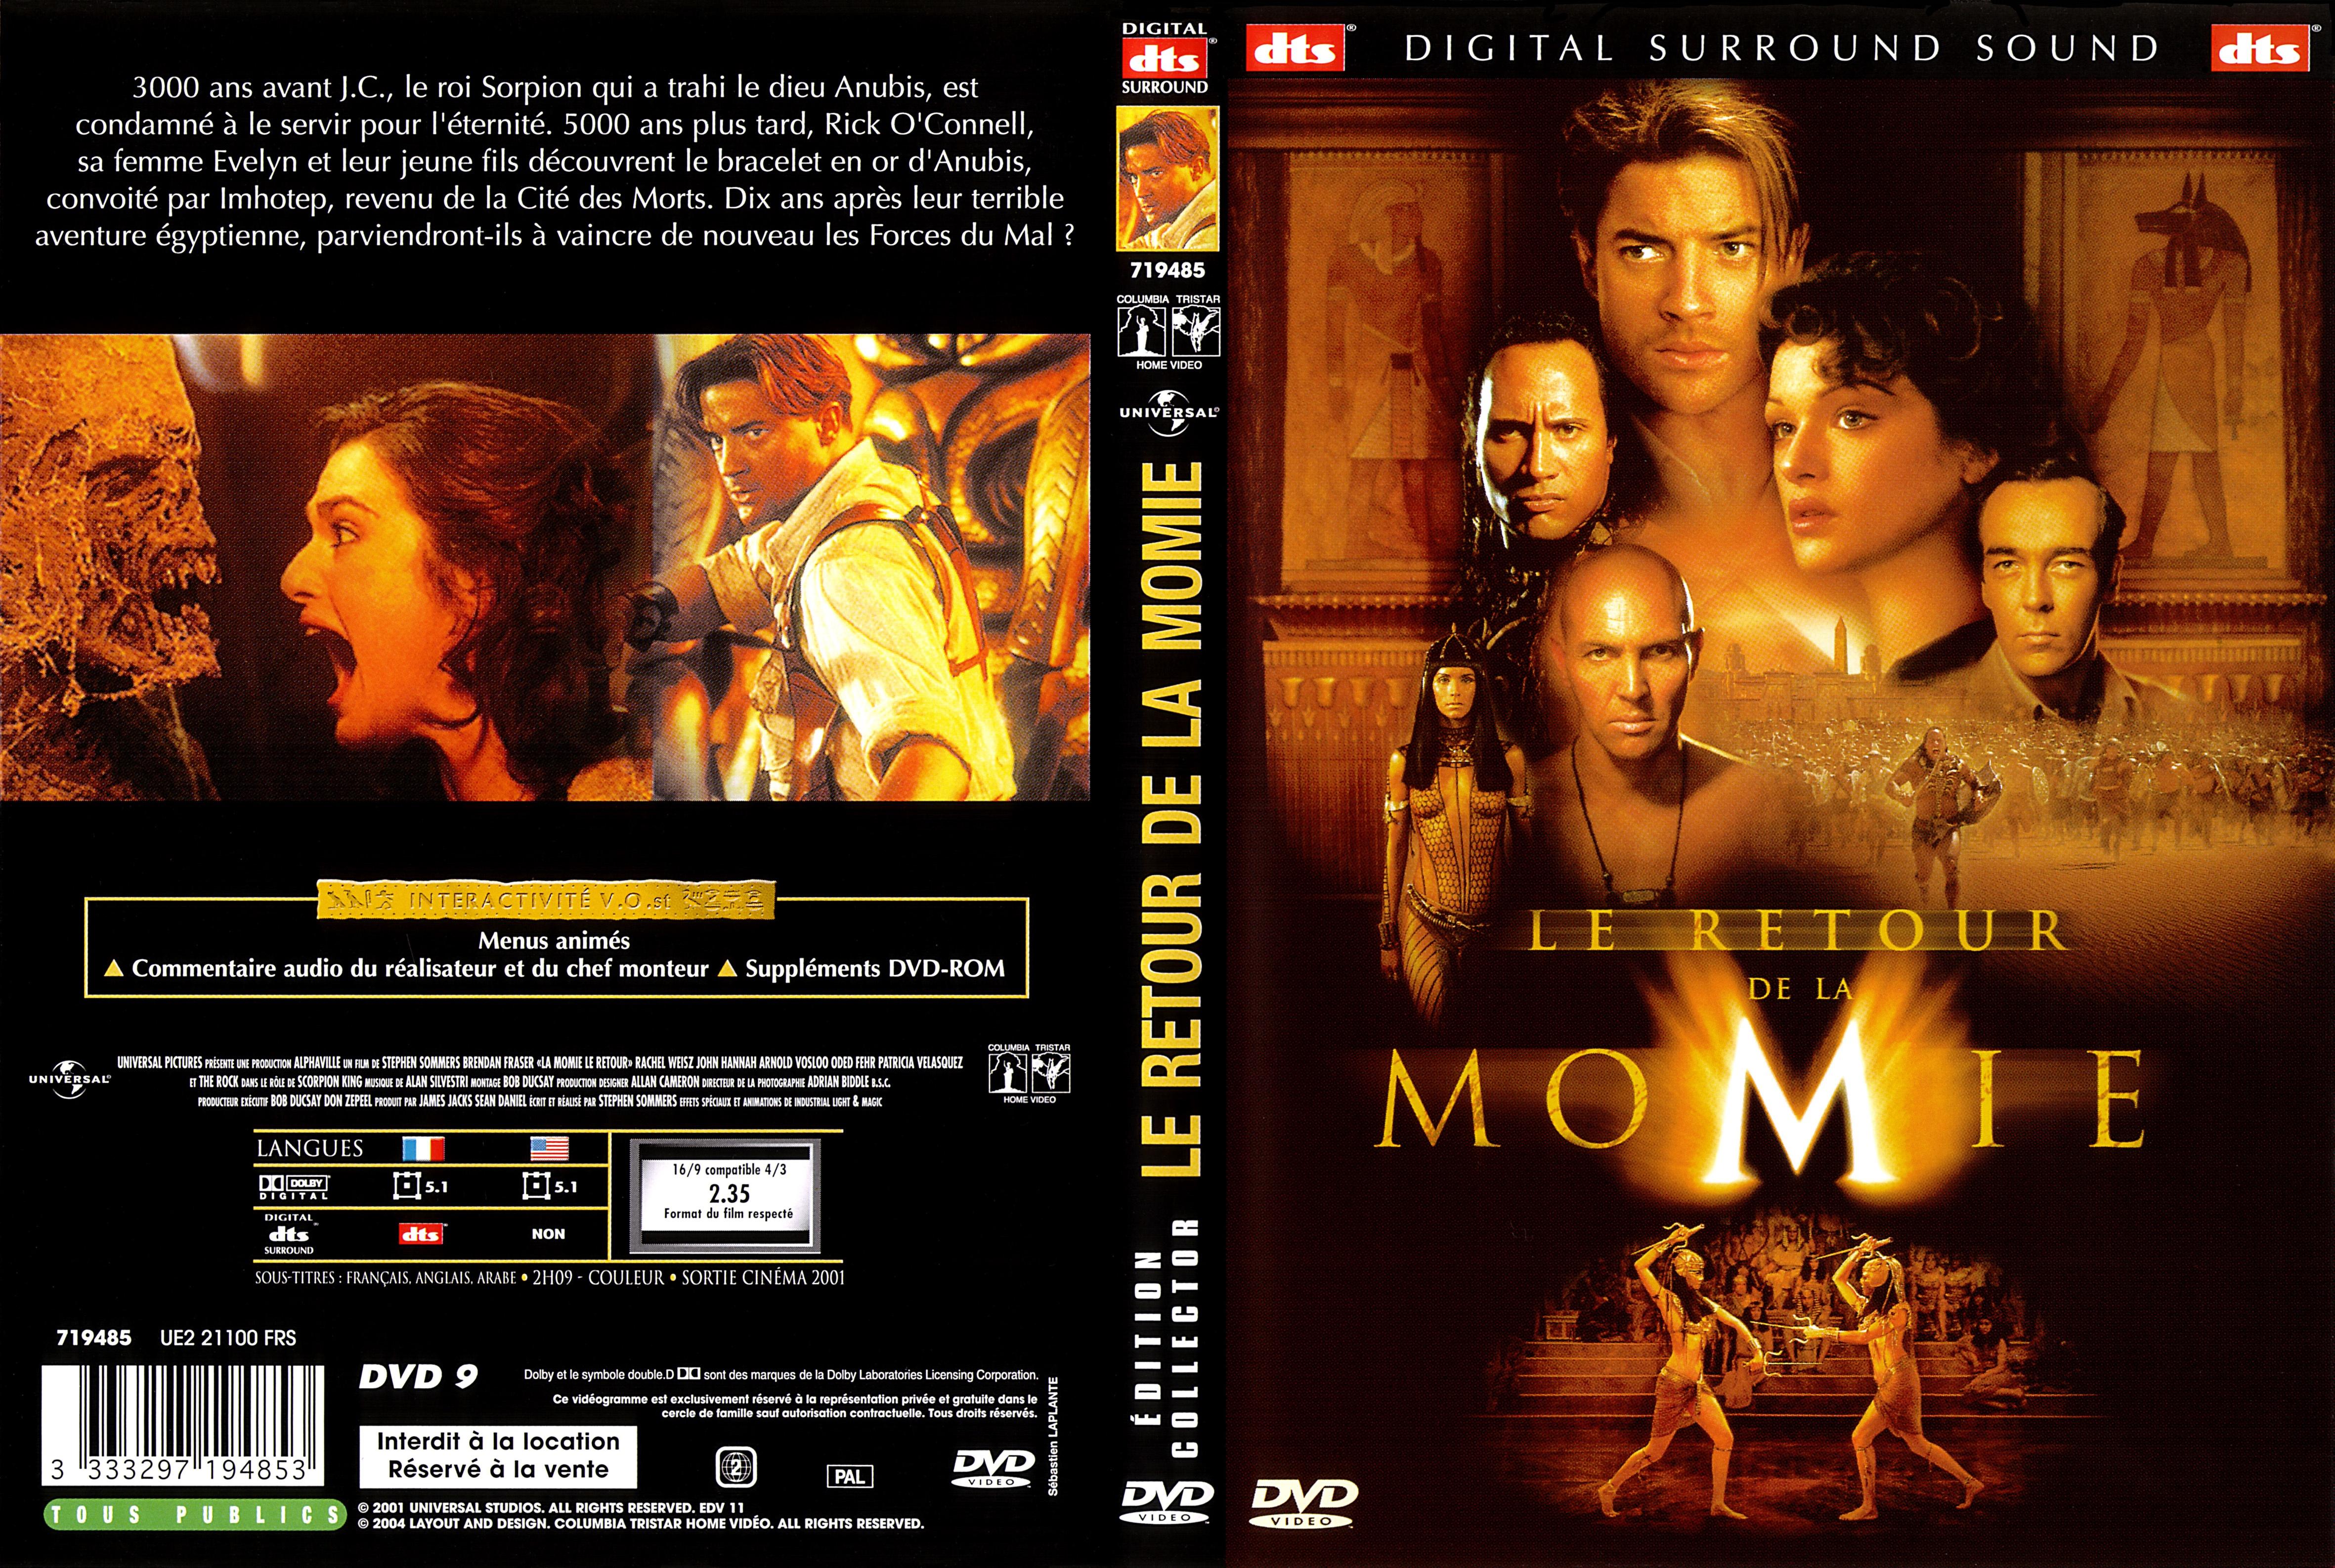 Jaquette DVD Le retour de la momie